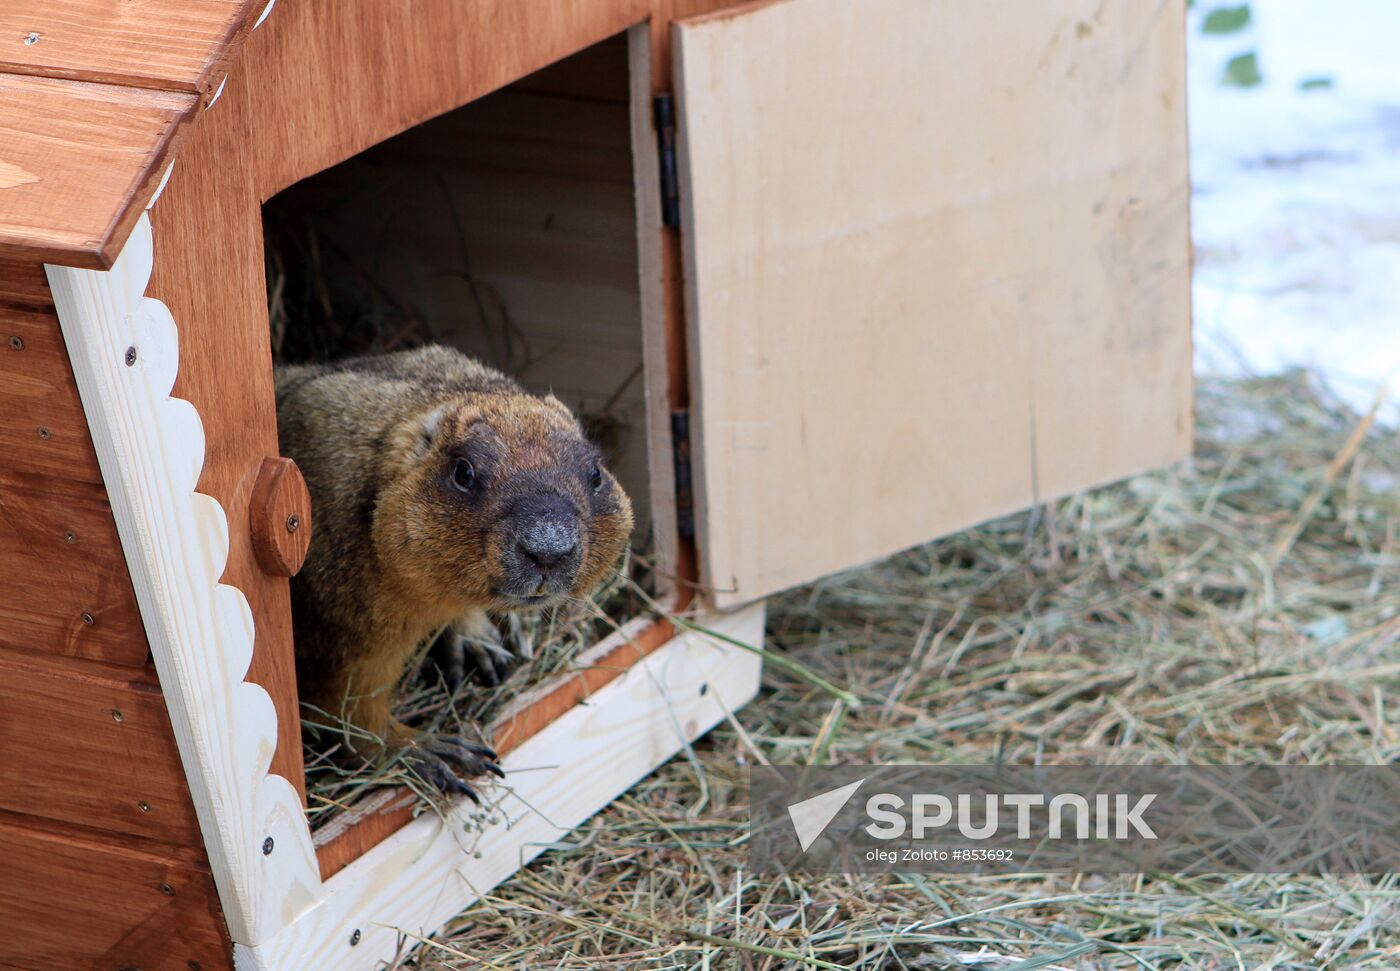 Nizhny Novgorod's Limpopo zoo celebrates Groundhog Day